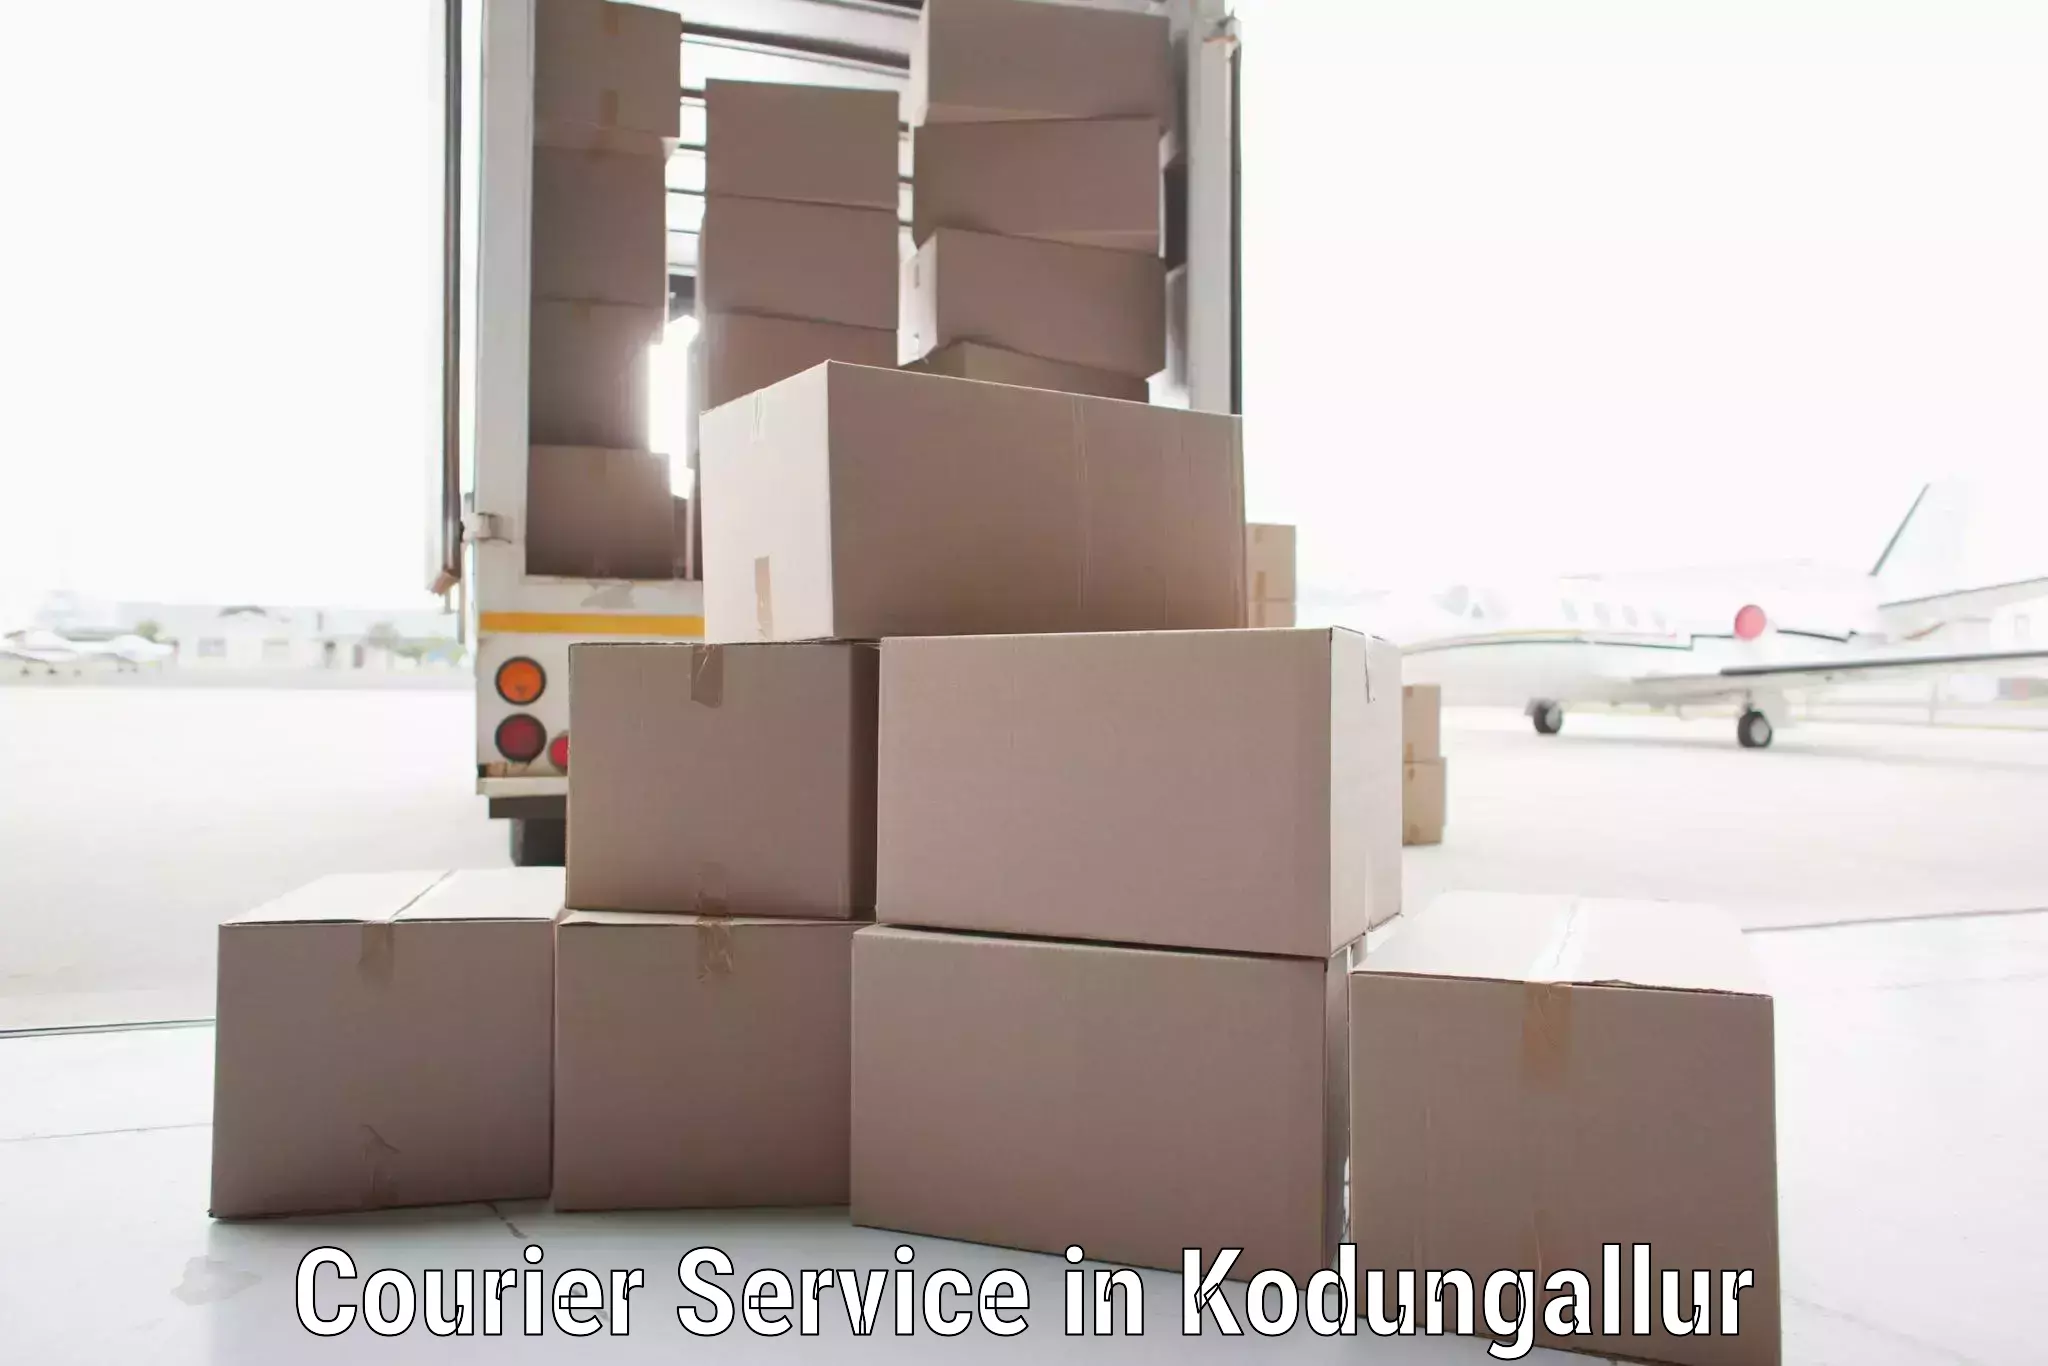 Reliable package handling in Kodungallur